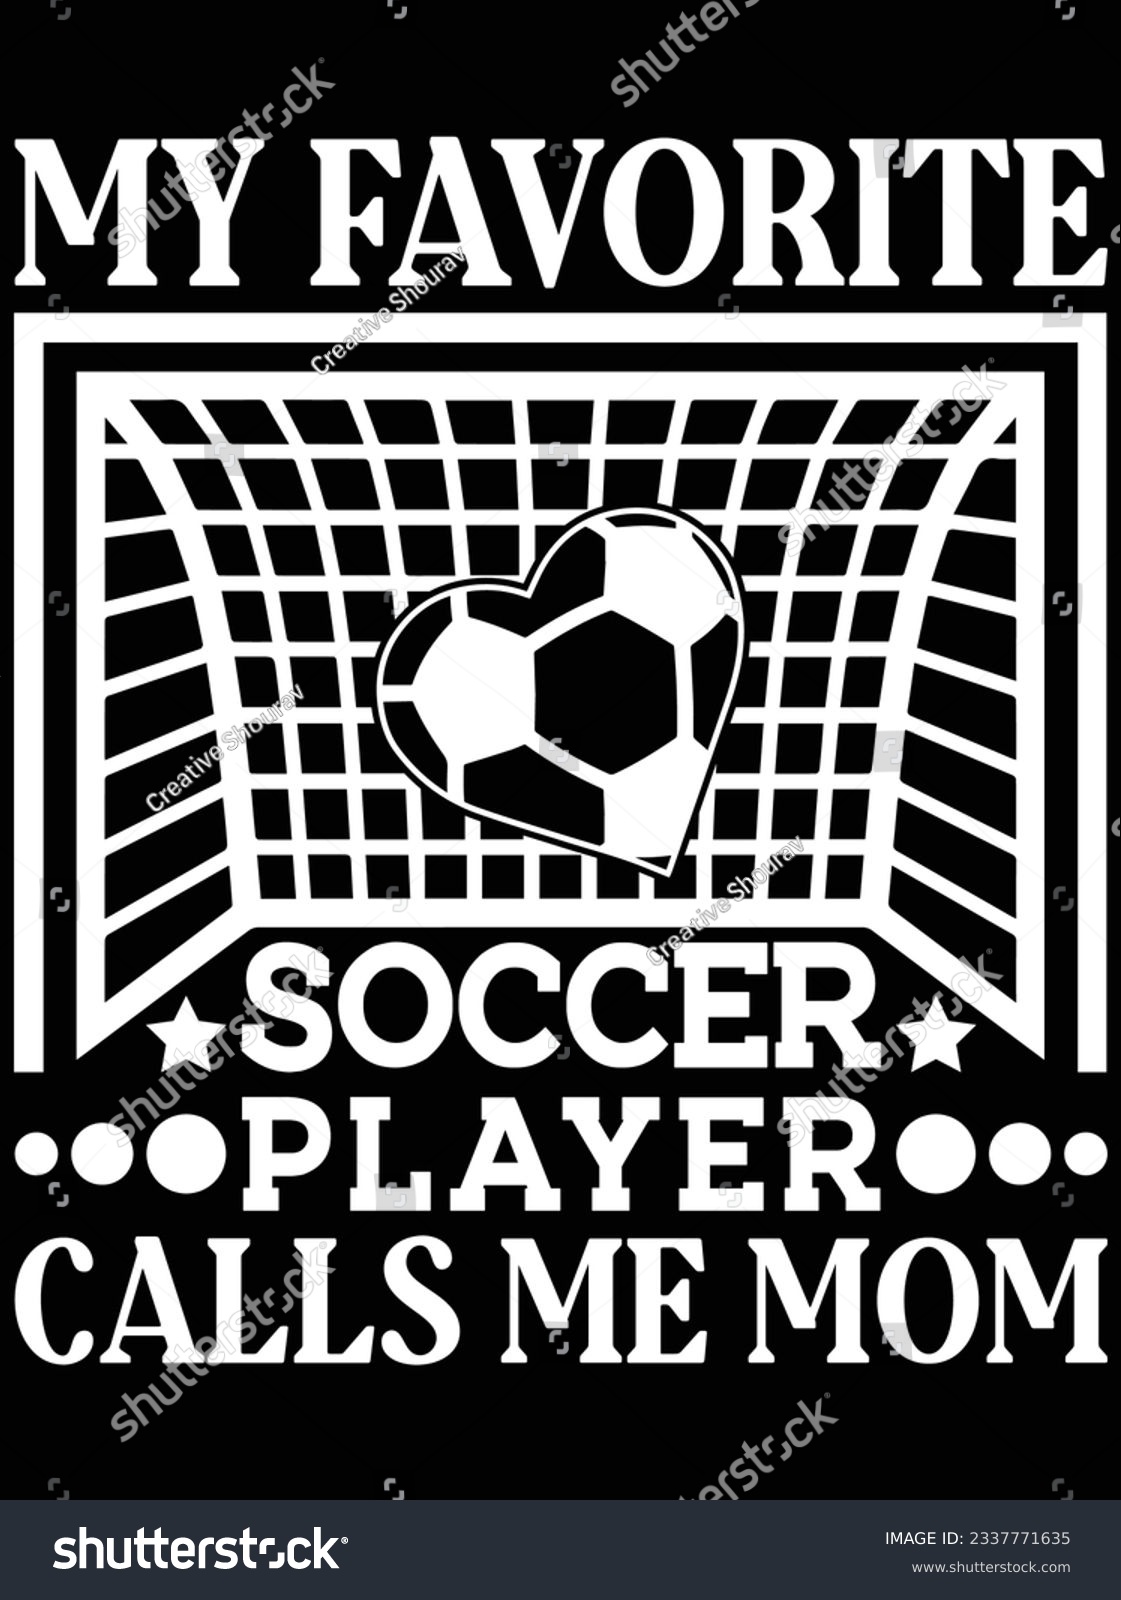 SVG of My favorite soccer player calls me mom vector art design, eps file. design file for t-shirt. SVG, EPS cuttable design file svg